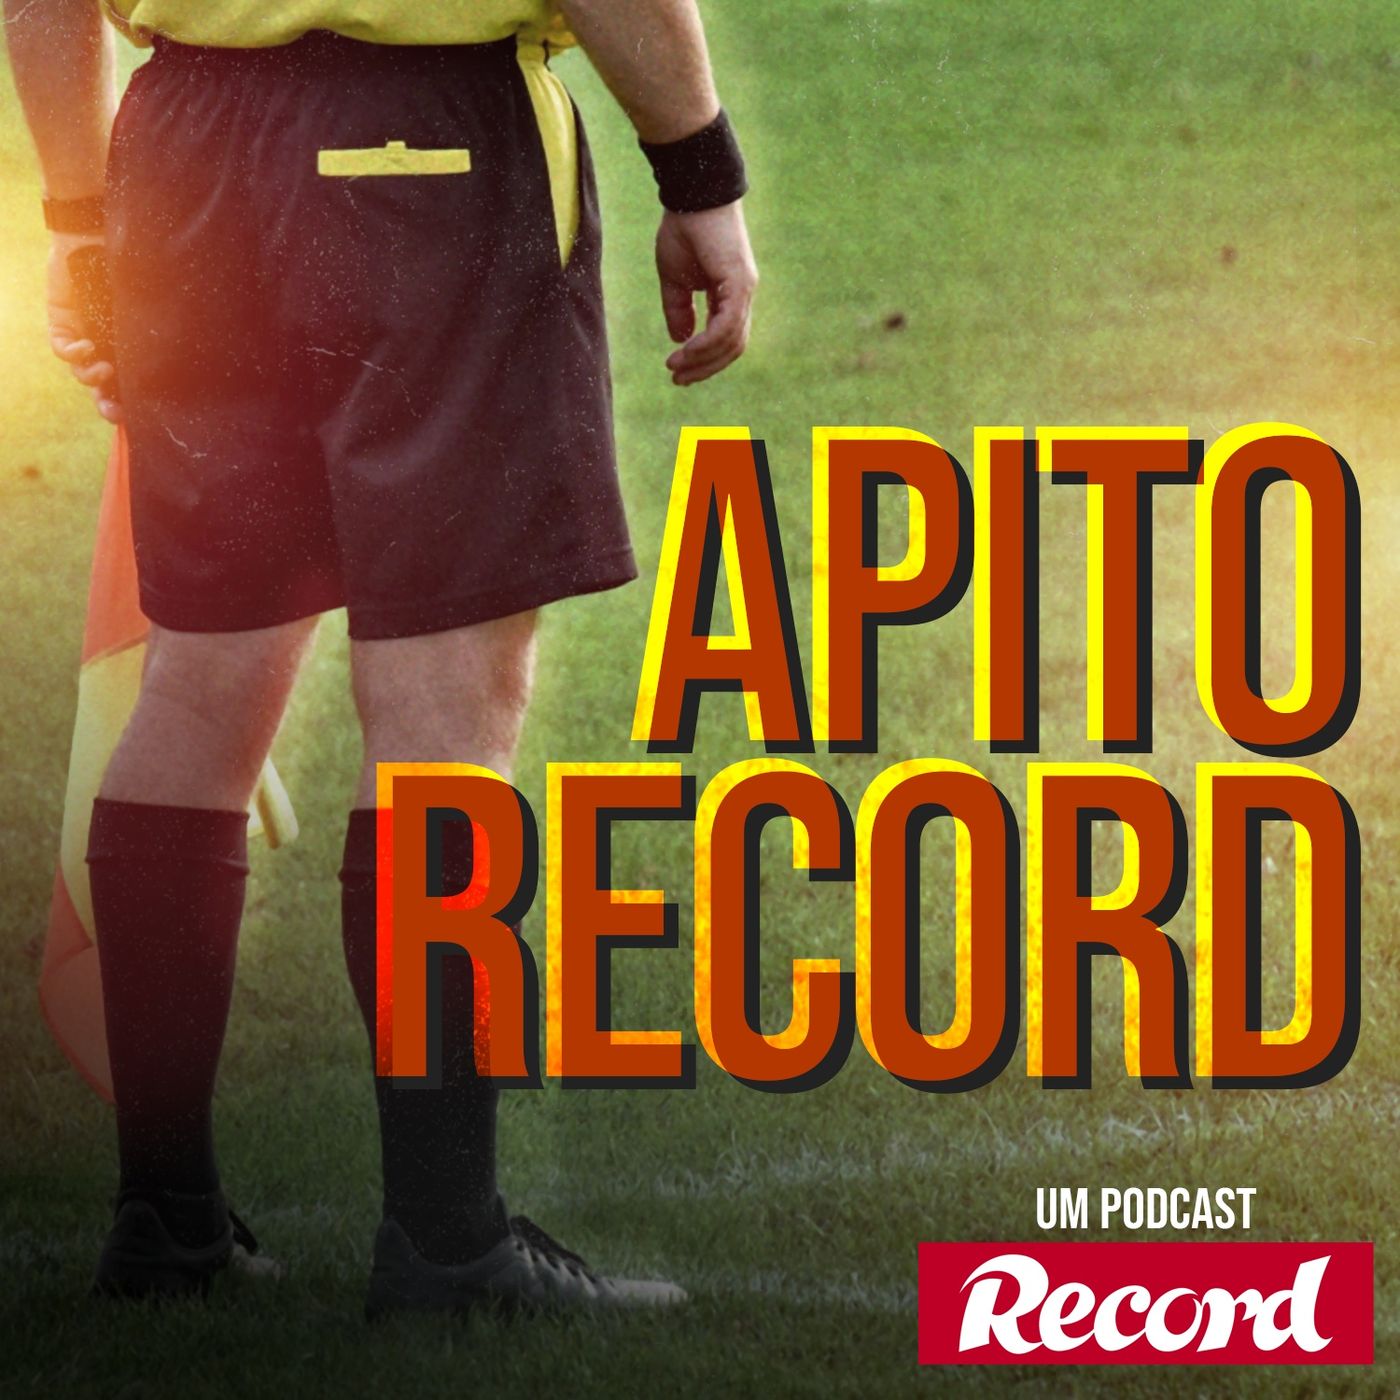 Apito Record